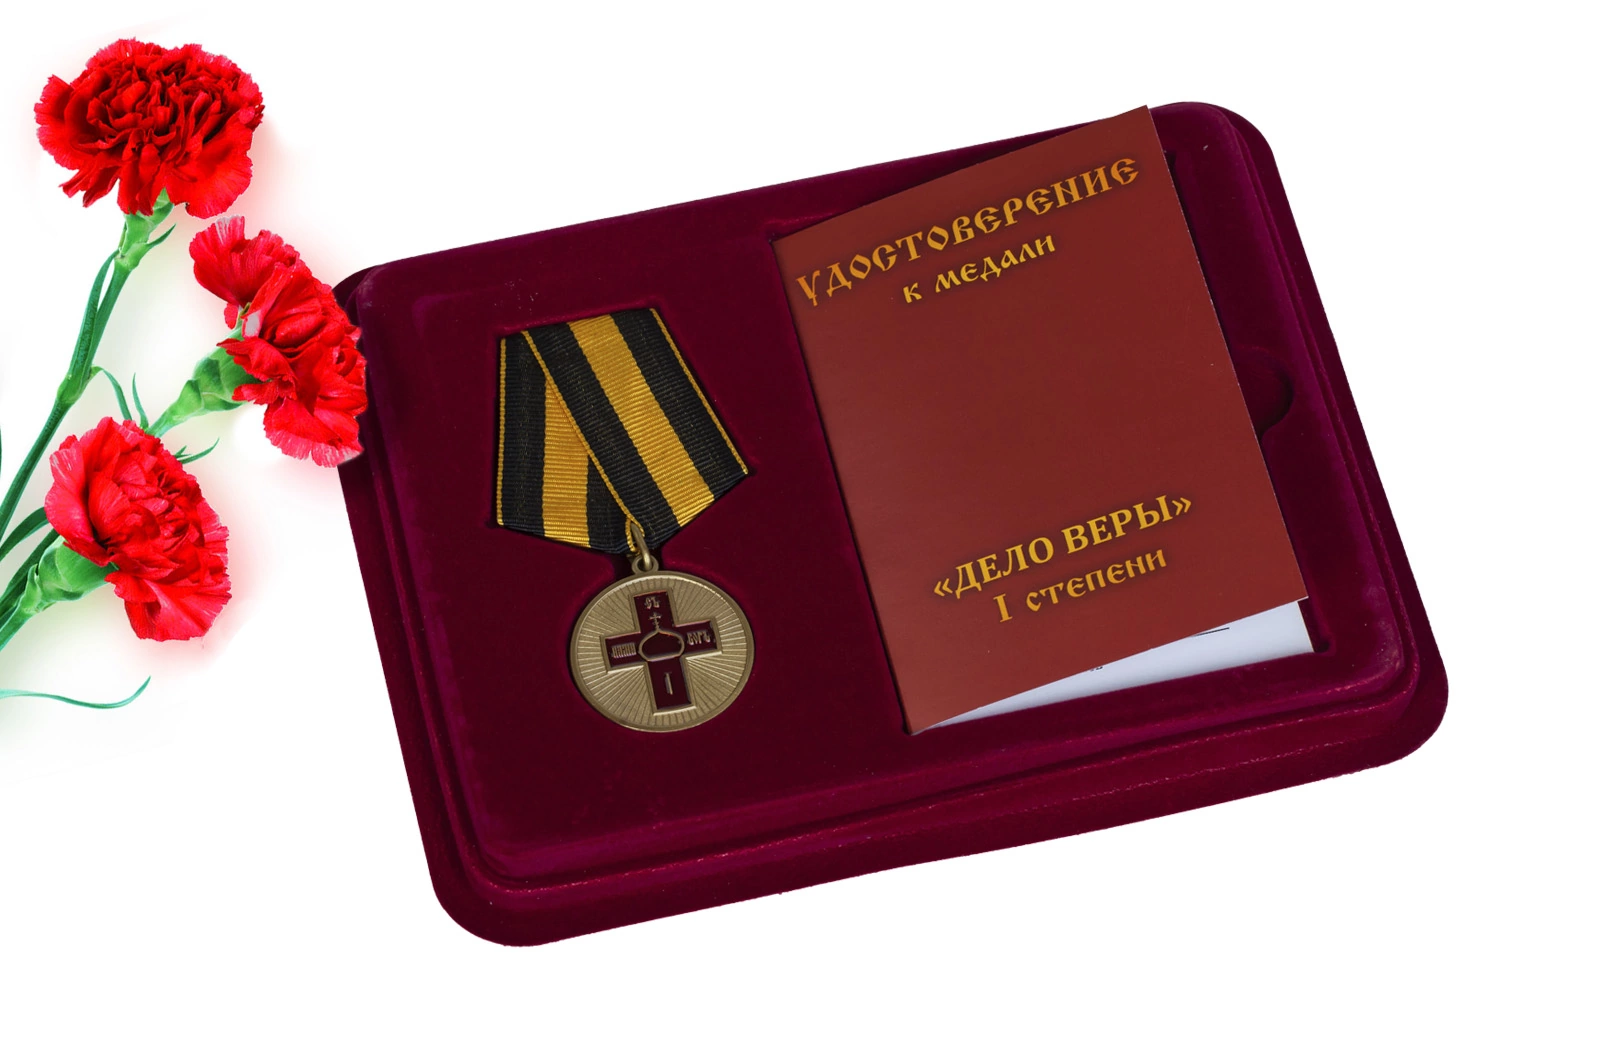 Медаль "Дело Веры" 1 степени в футляре с отделением под удостоверение